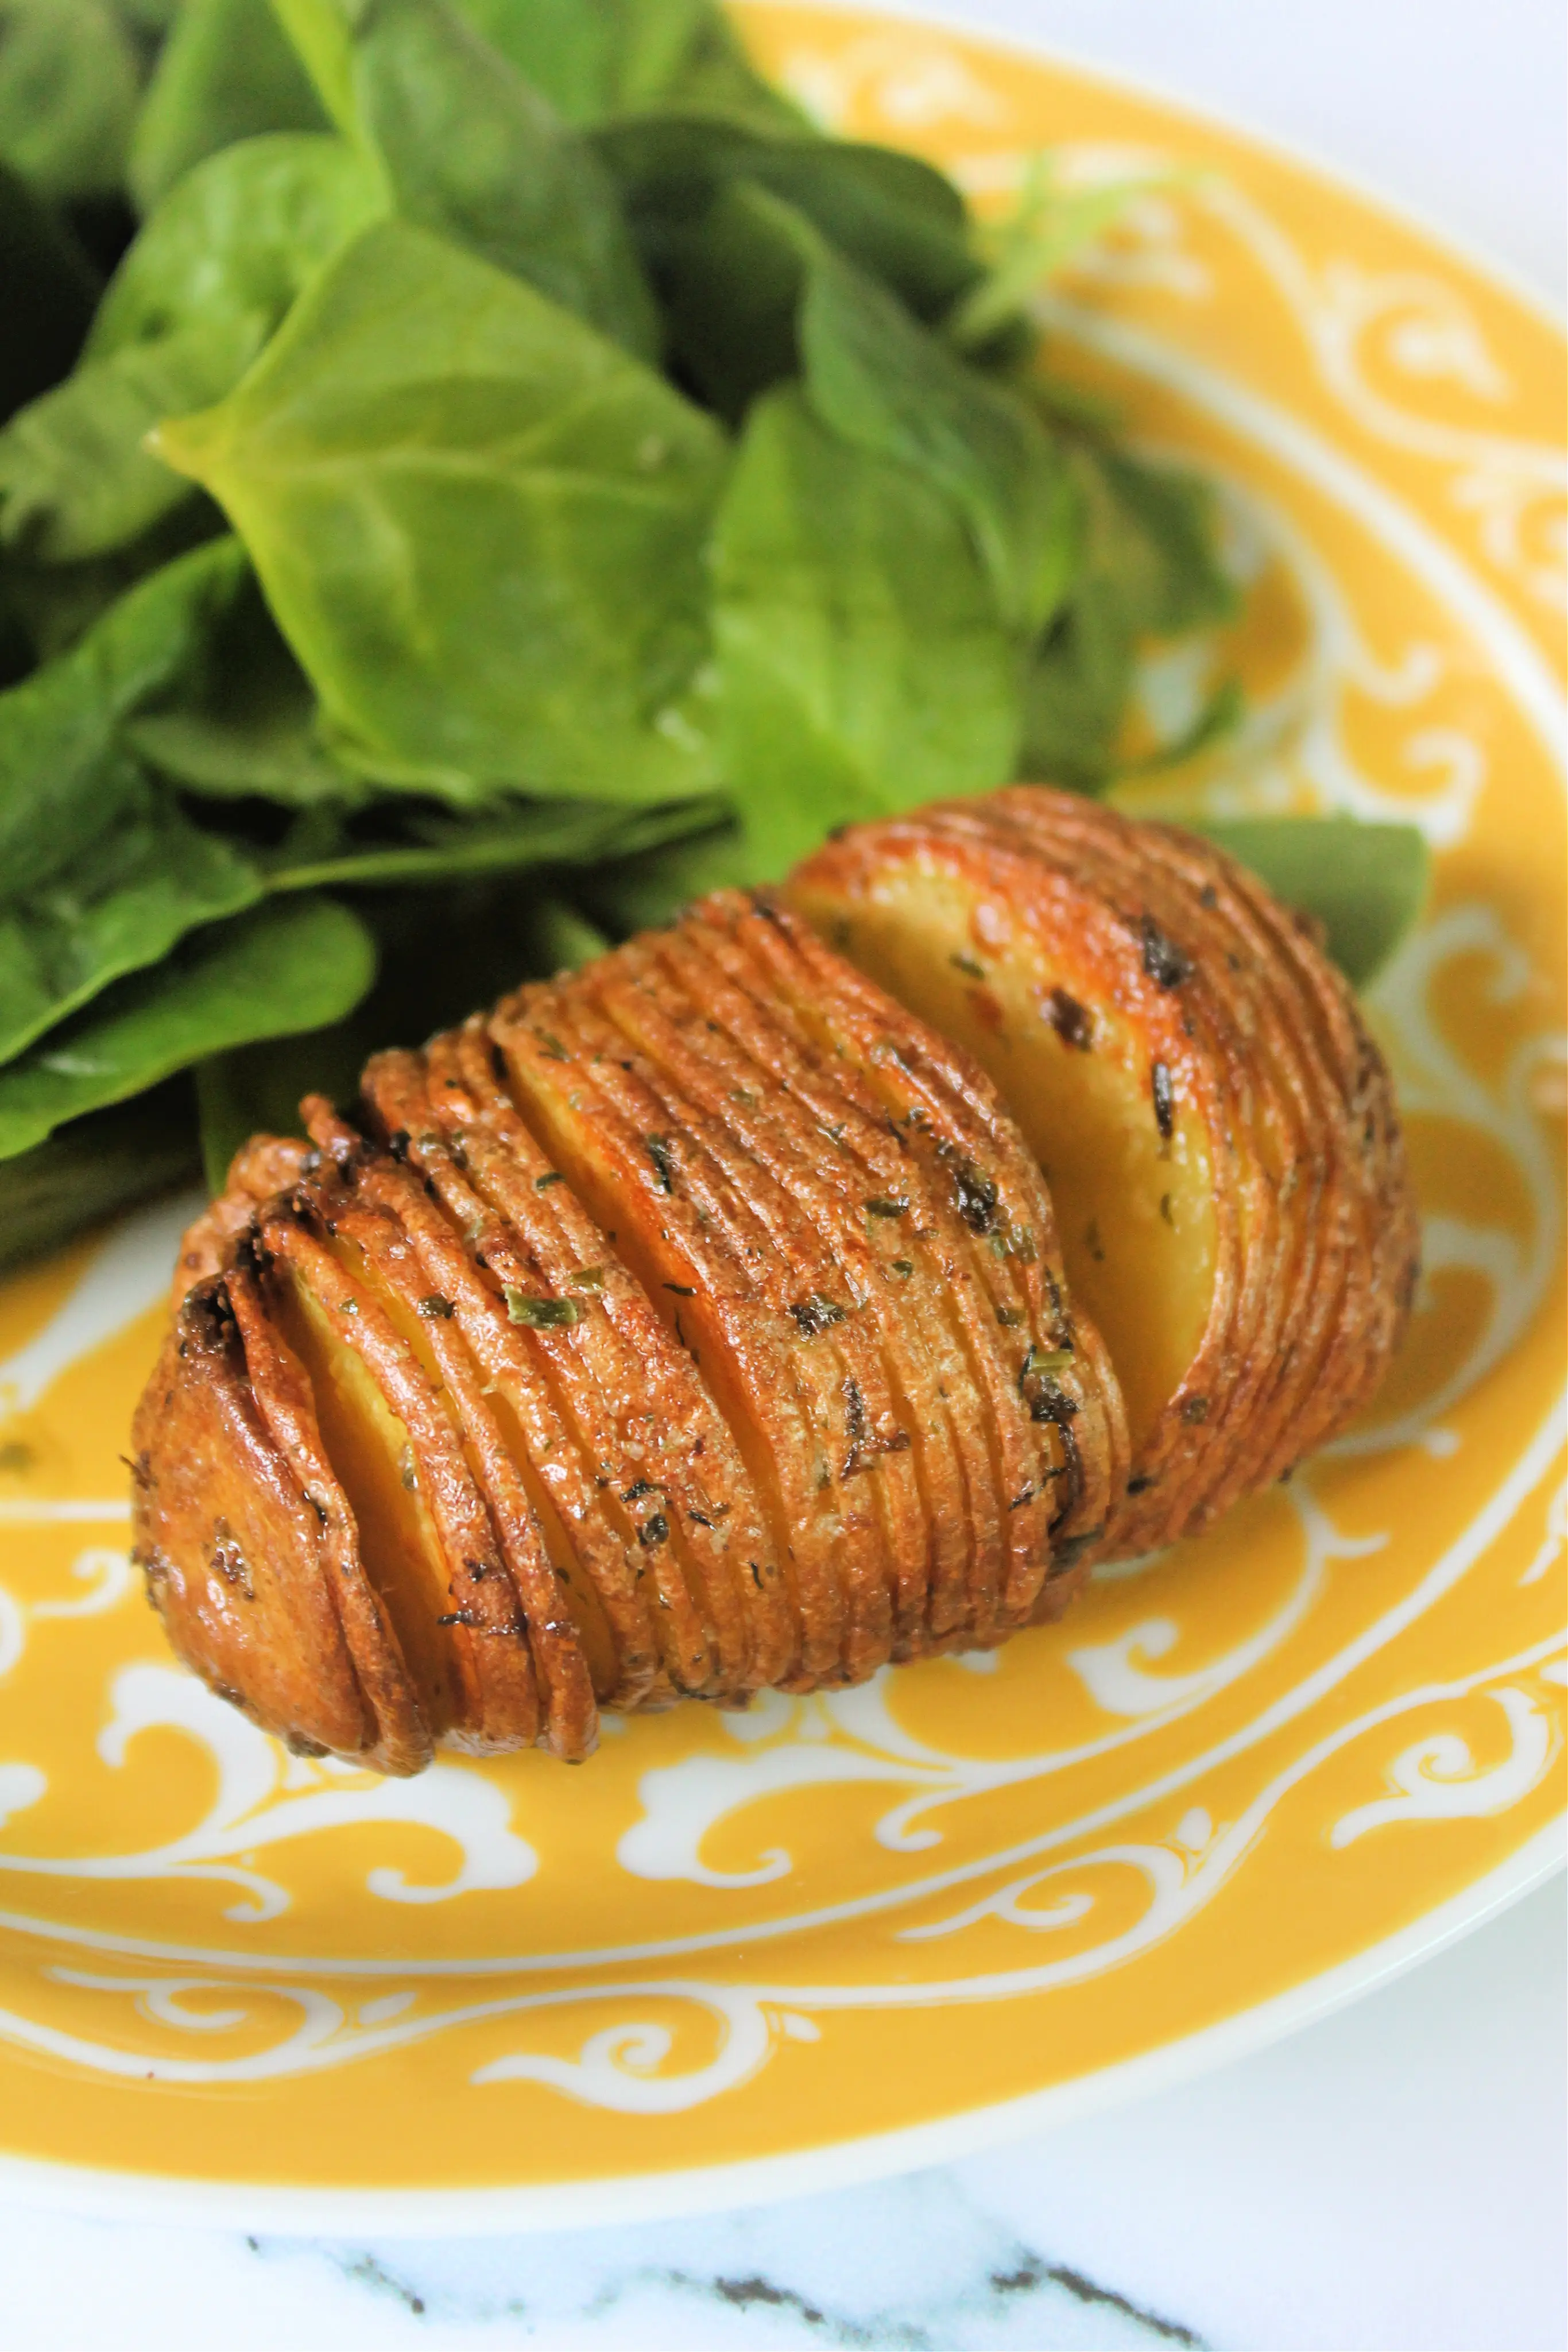 Close up of hasselback potato on yellow plate.